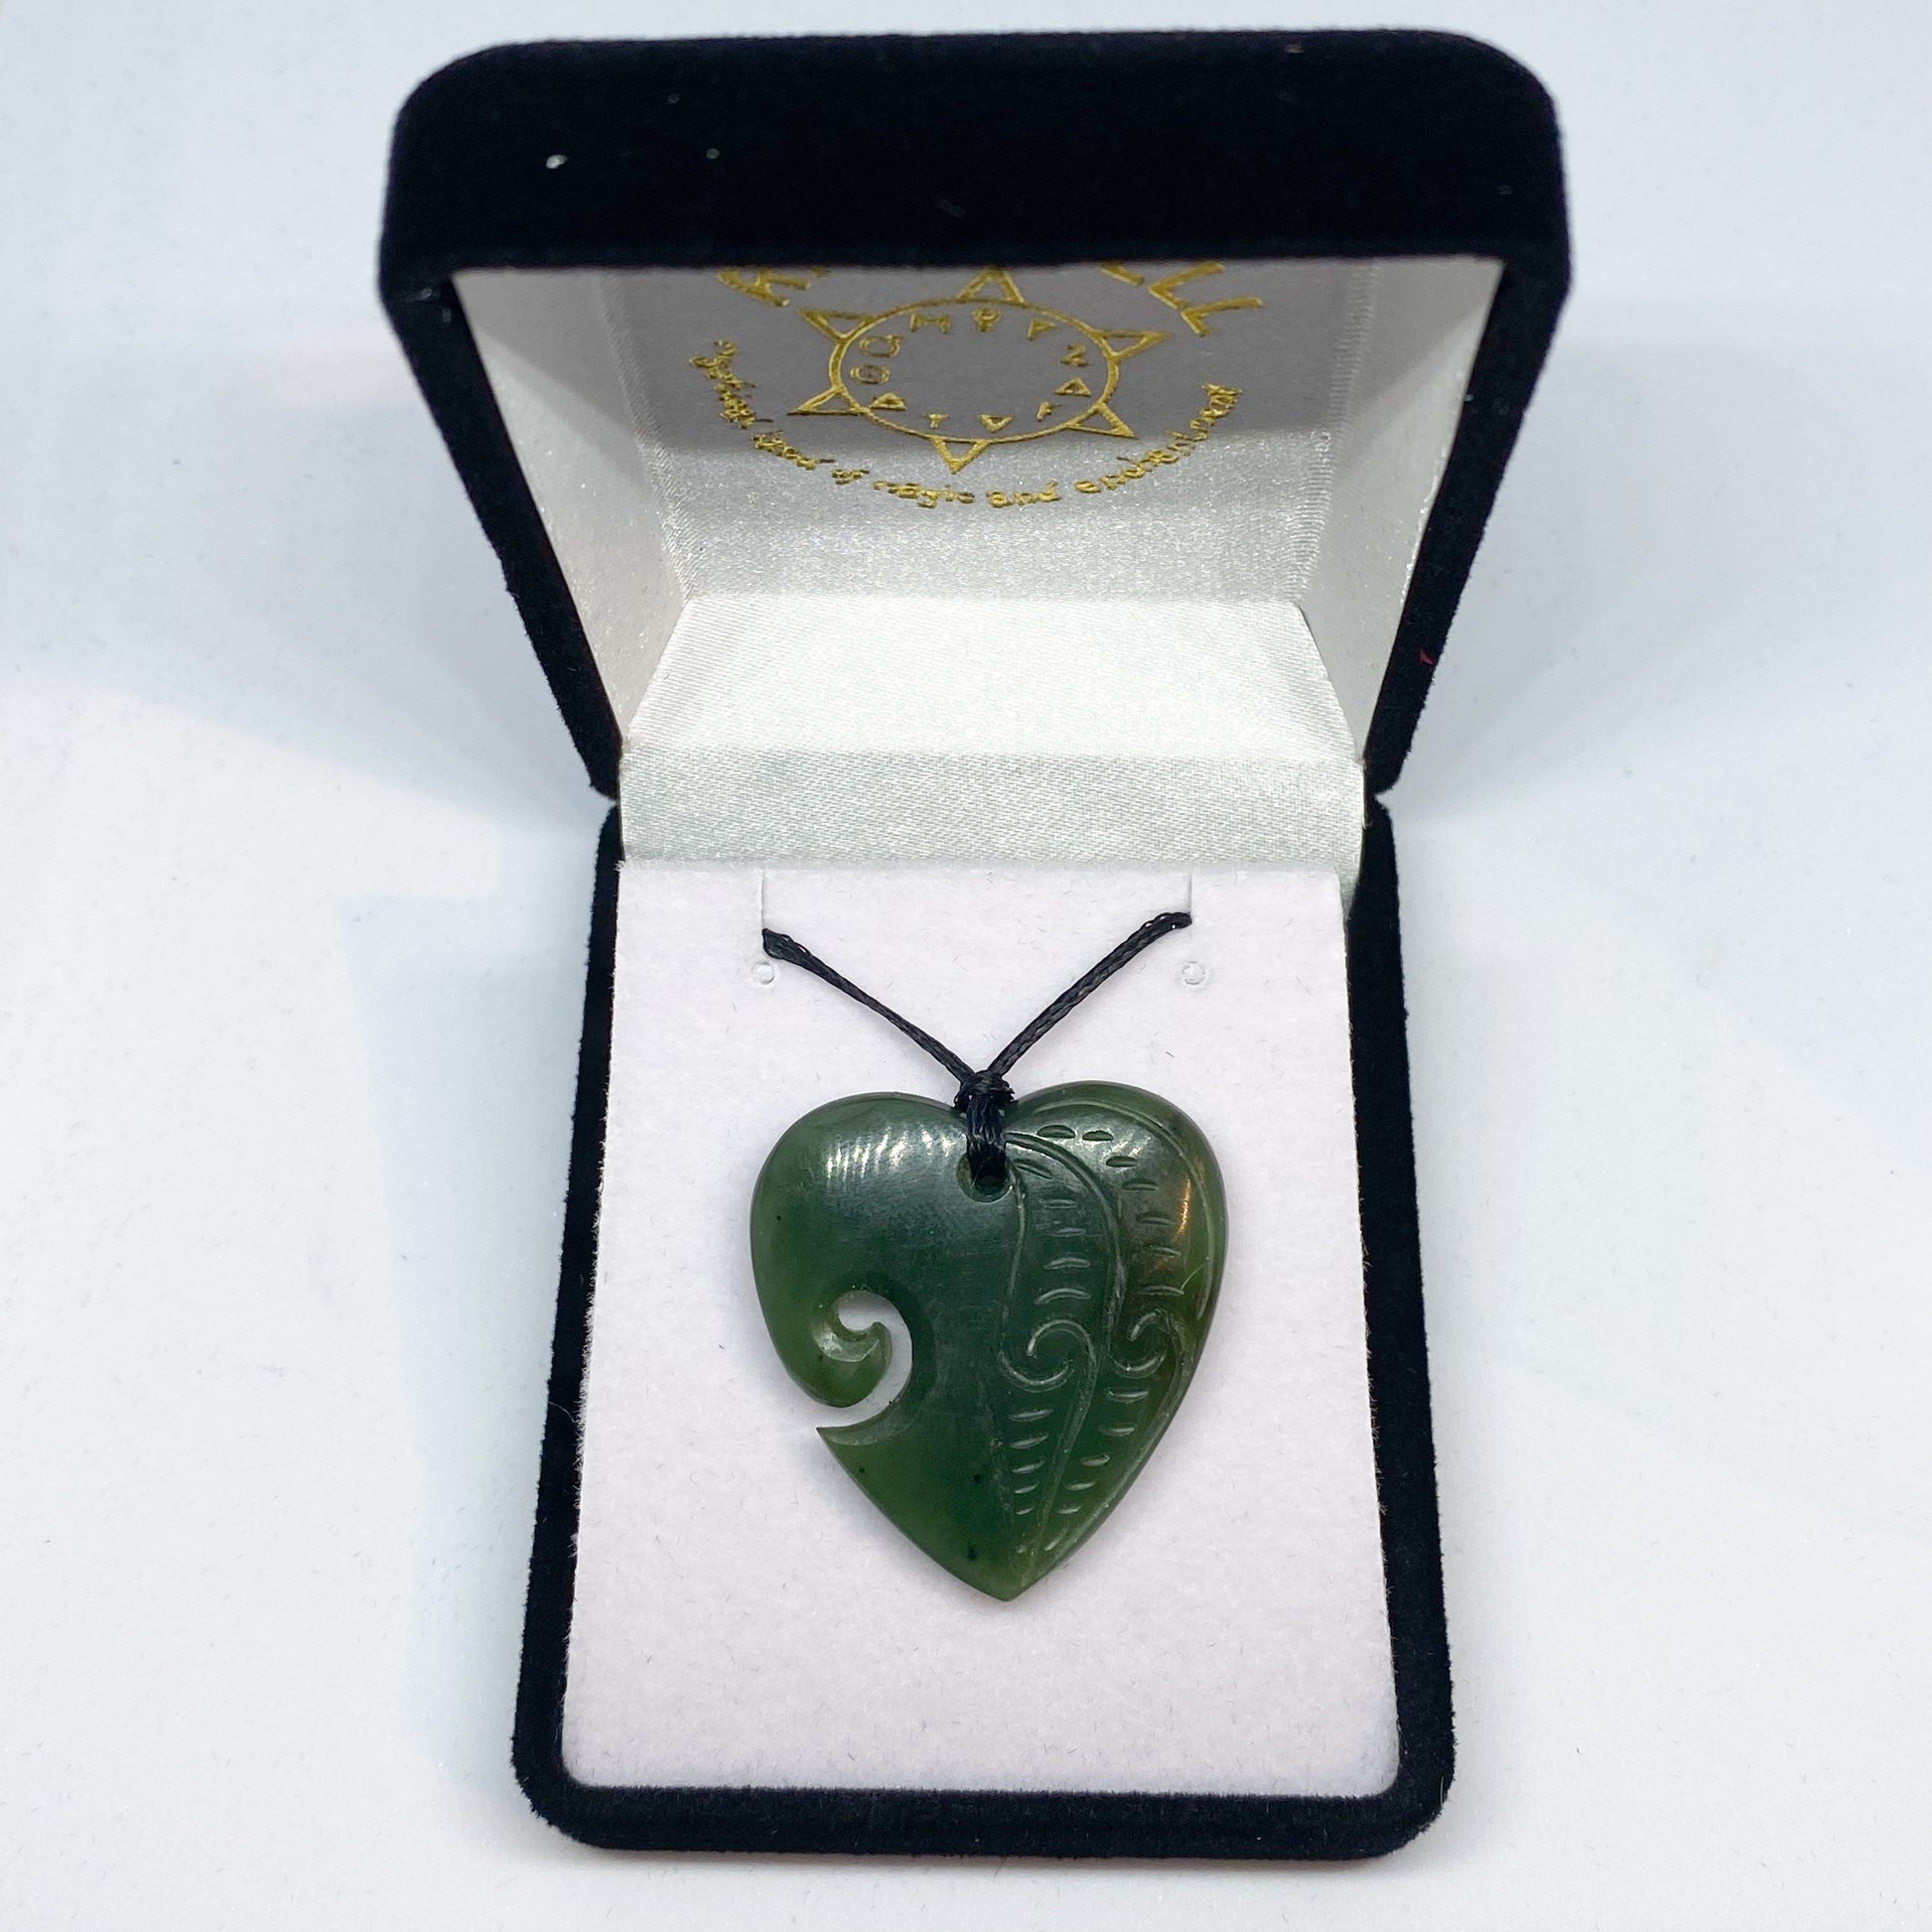 Heart Greenstone Pendant Carving with Koru Indentation - Rivendell Shop